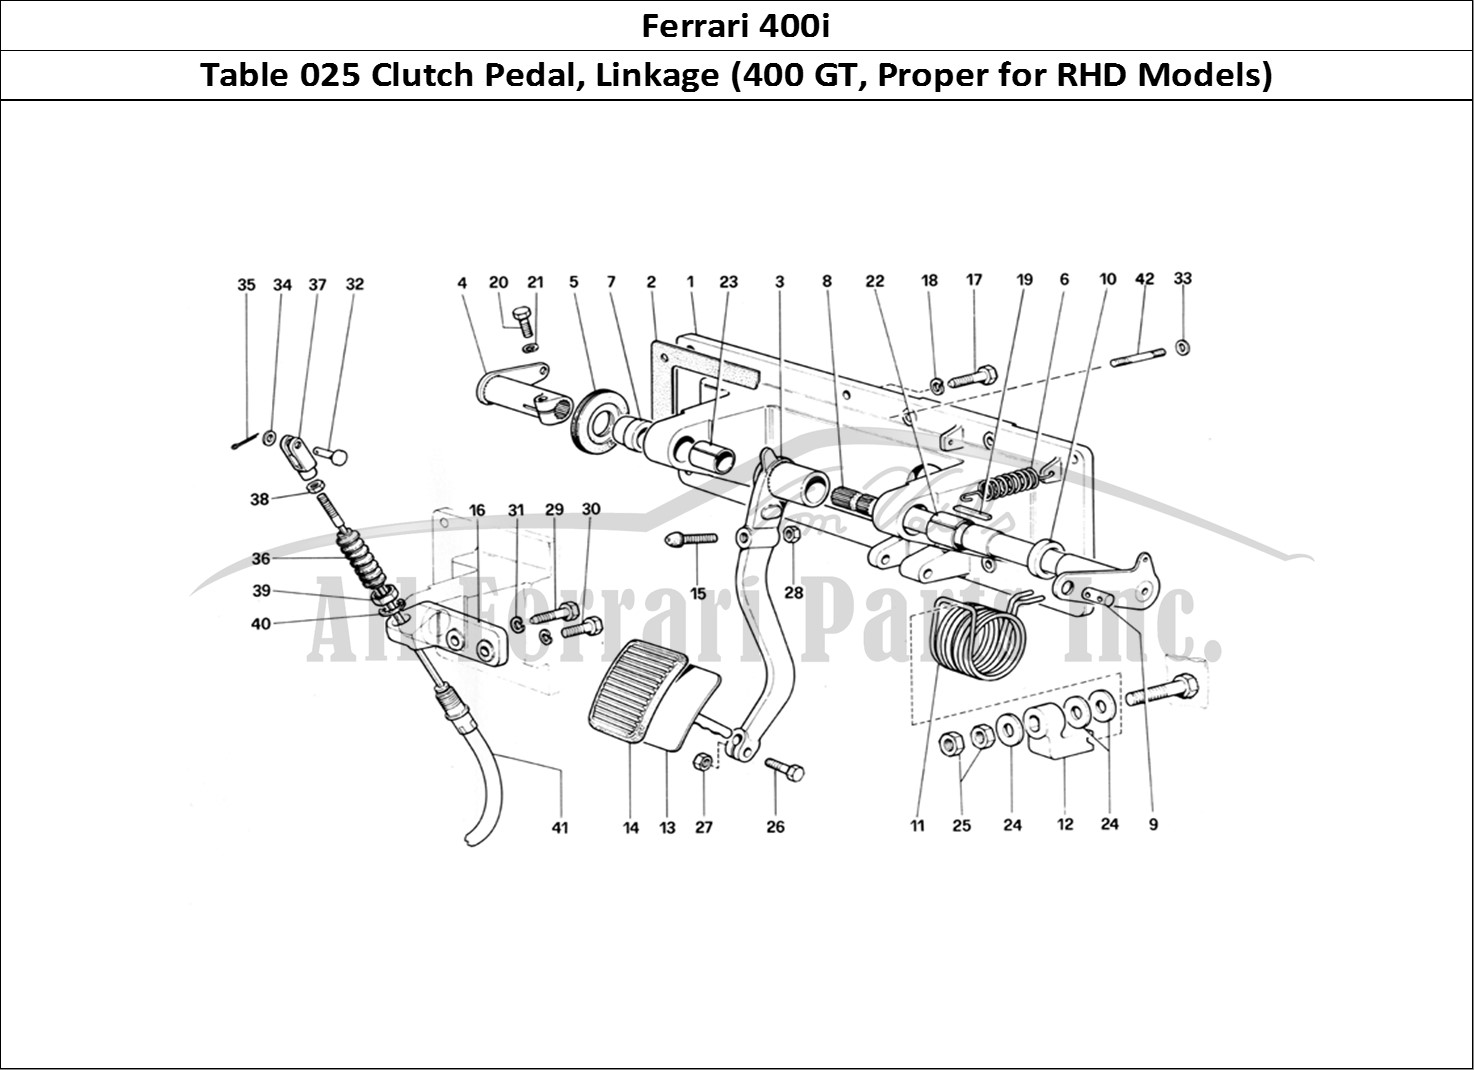 Ferrari Parts Ferrari 400i (1983 Mechanical) Page 025 Clutch Release Control (4